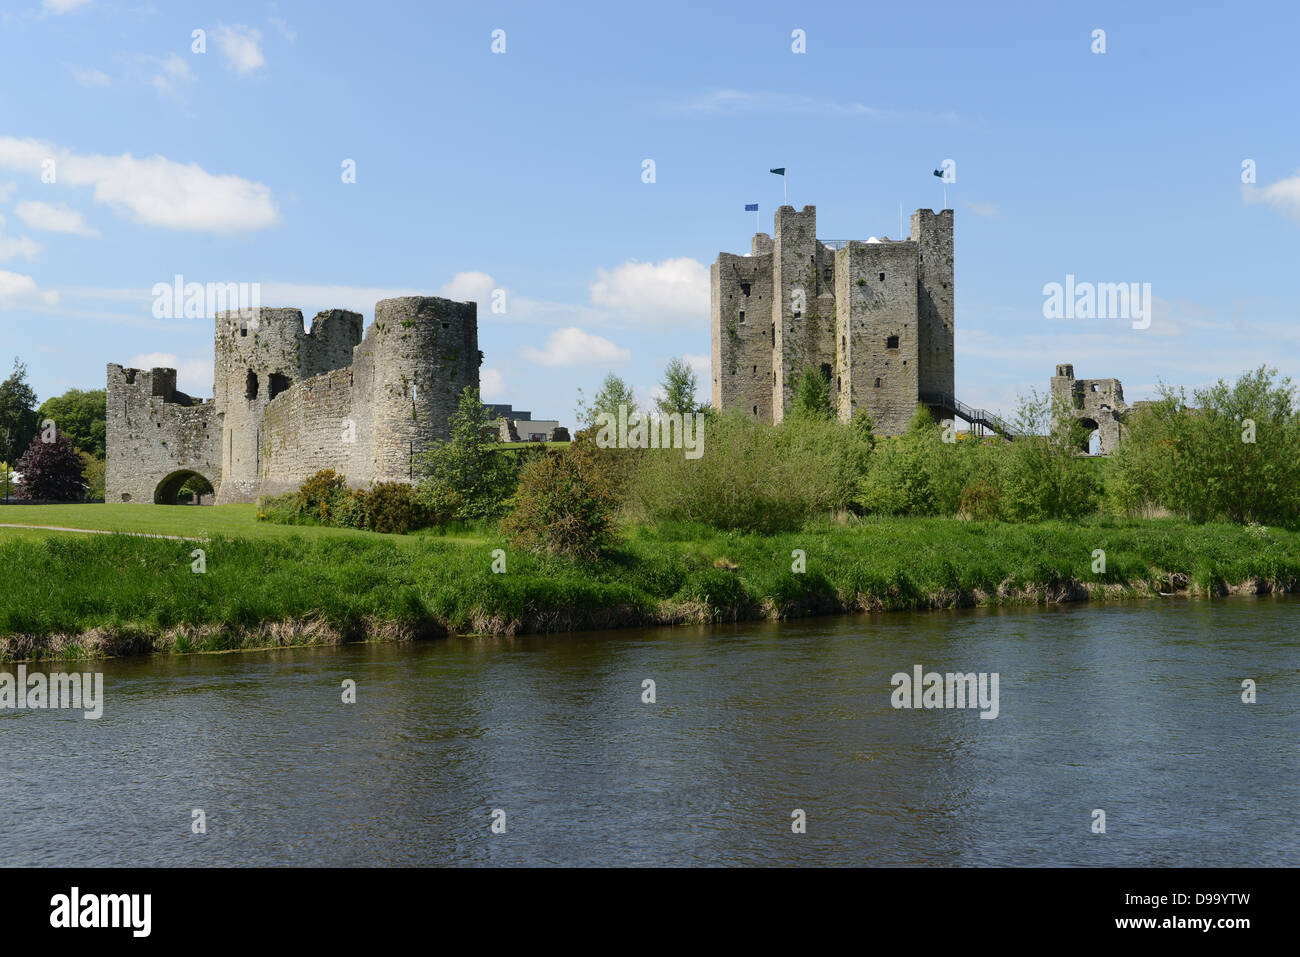 Le Château de Trim (latéraux, comté de Meath, Irlande) sur les rives de la rivière Boyne. C'est le plus grand château anglo-normand d'Irlande. Banque D'Images